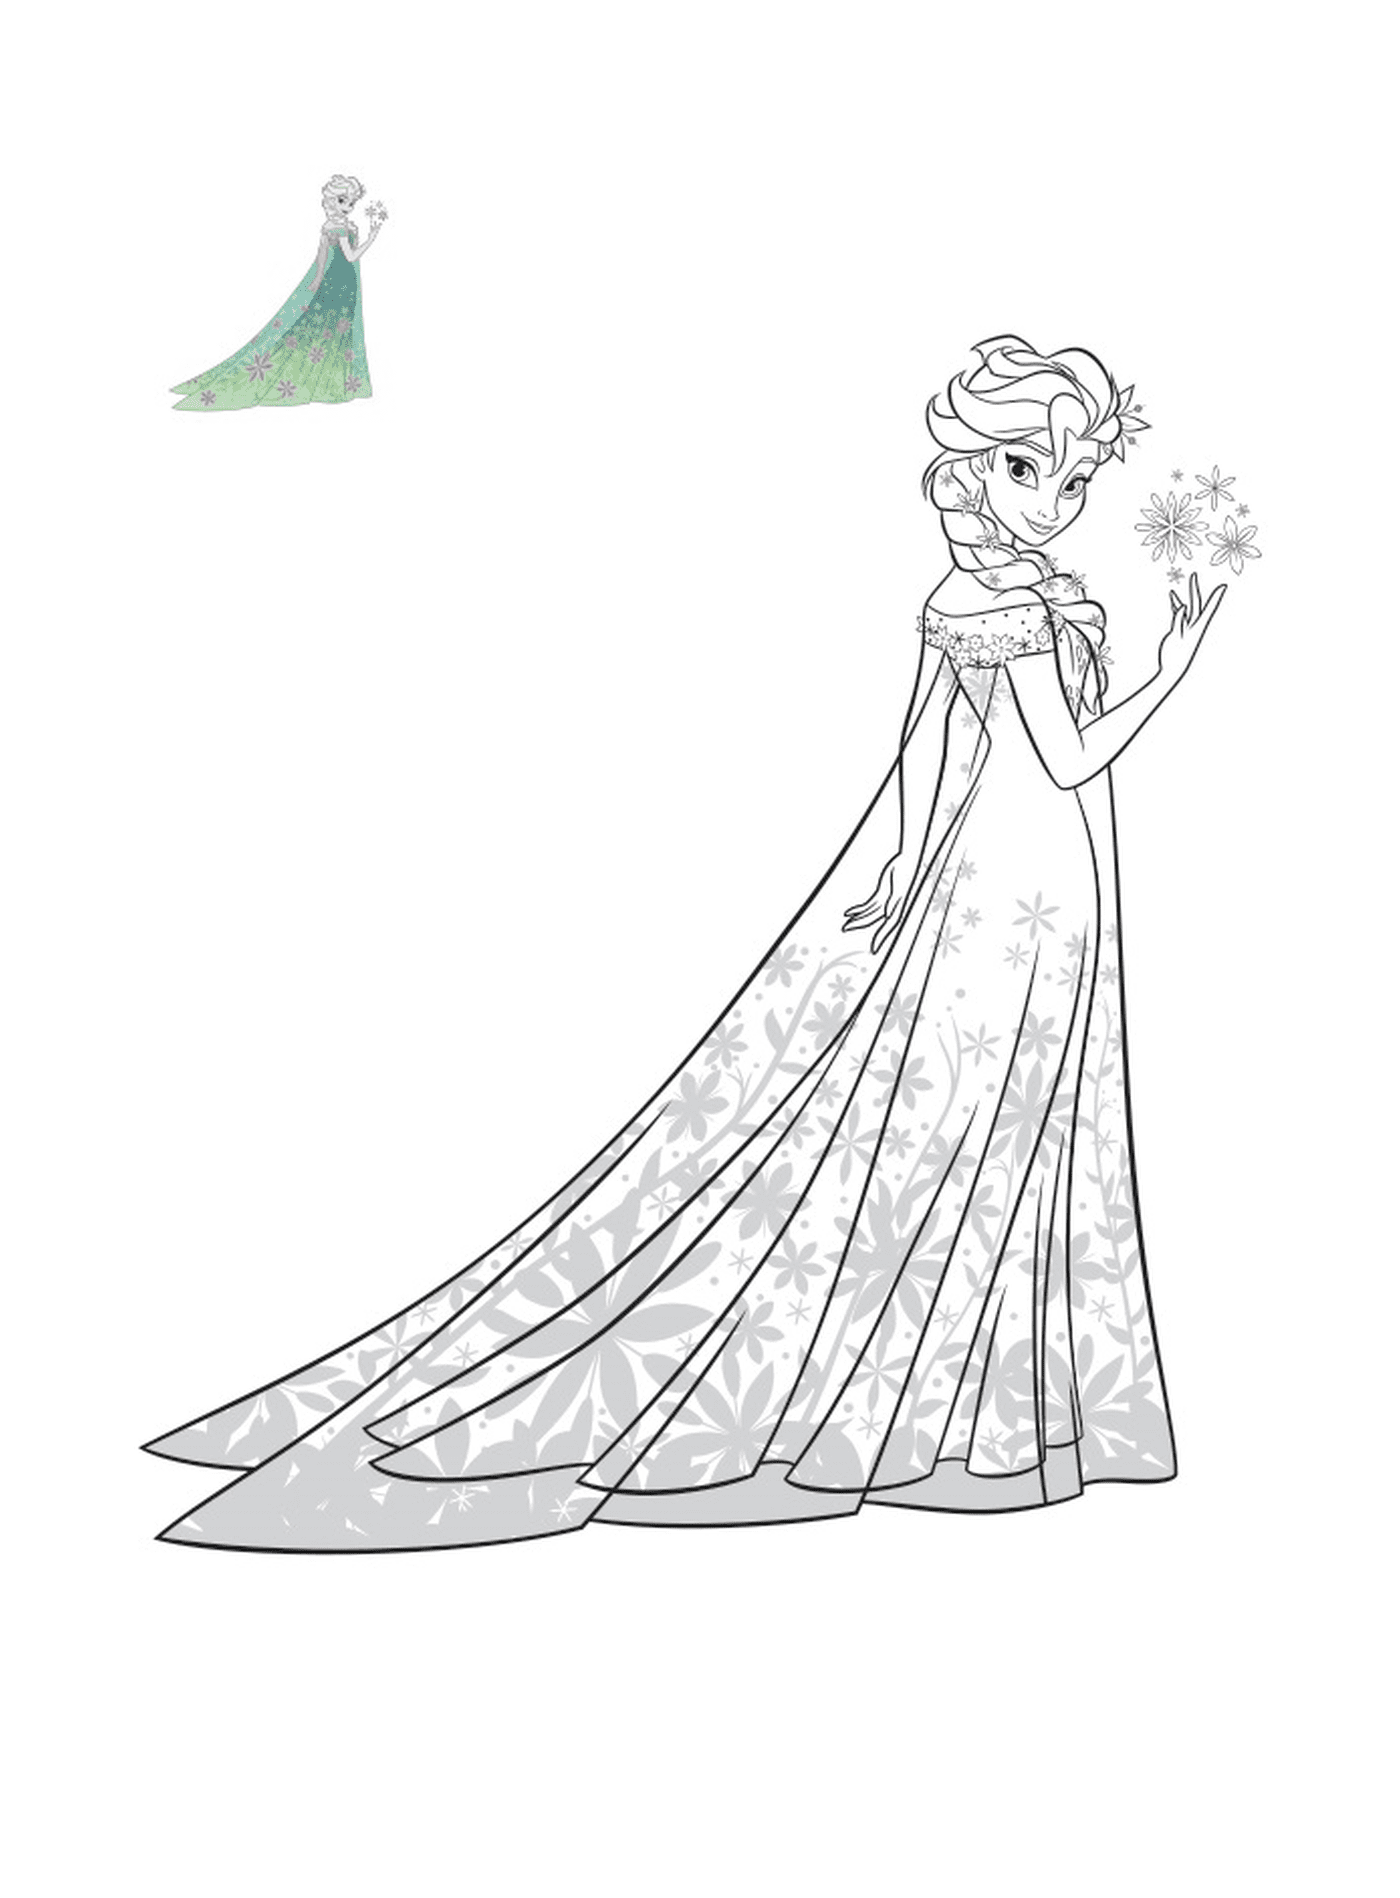  Elsa, Schneekönigin, im exotischen Kleid 